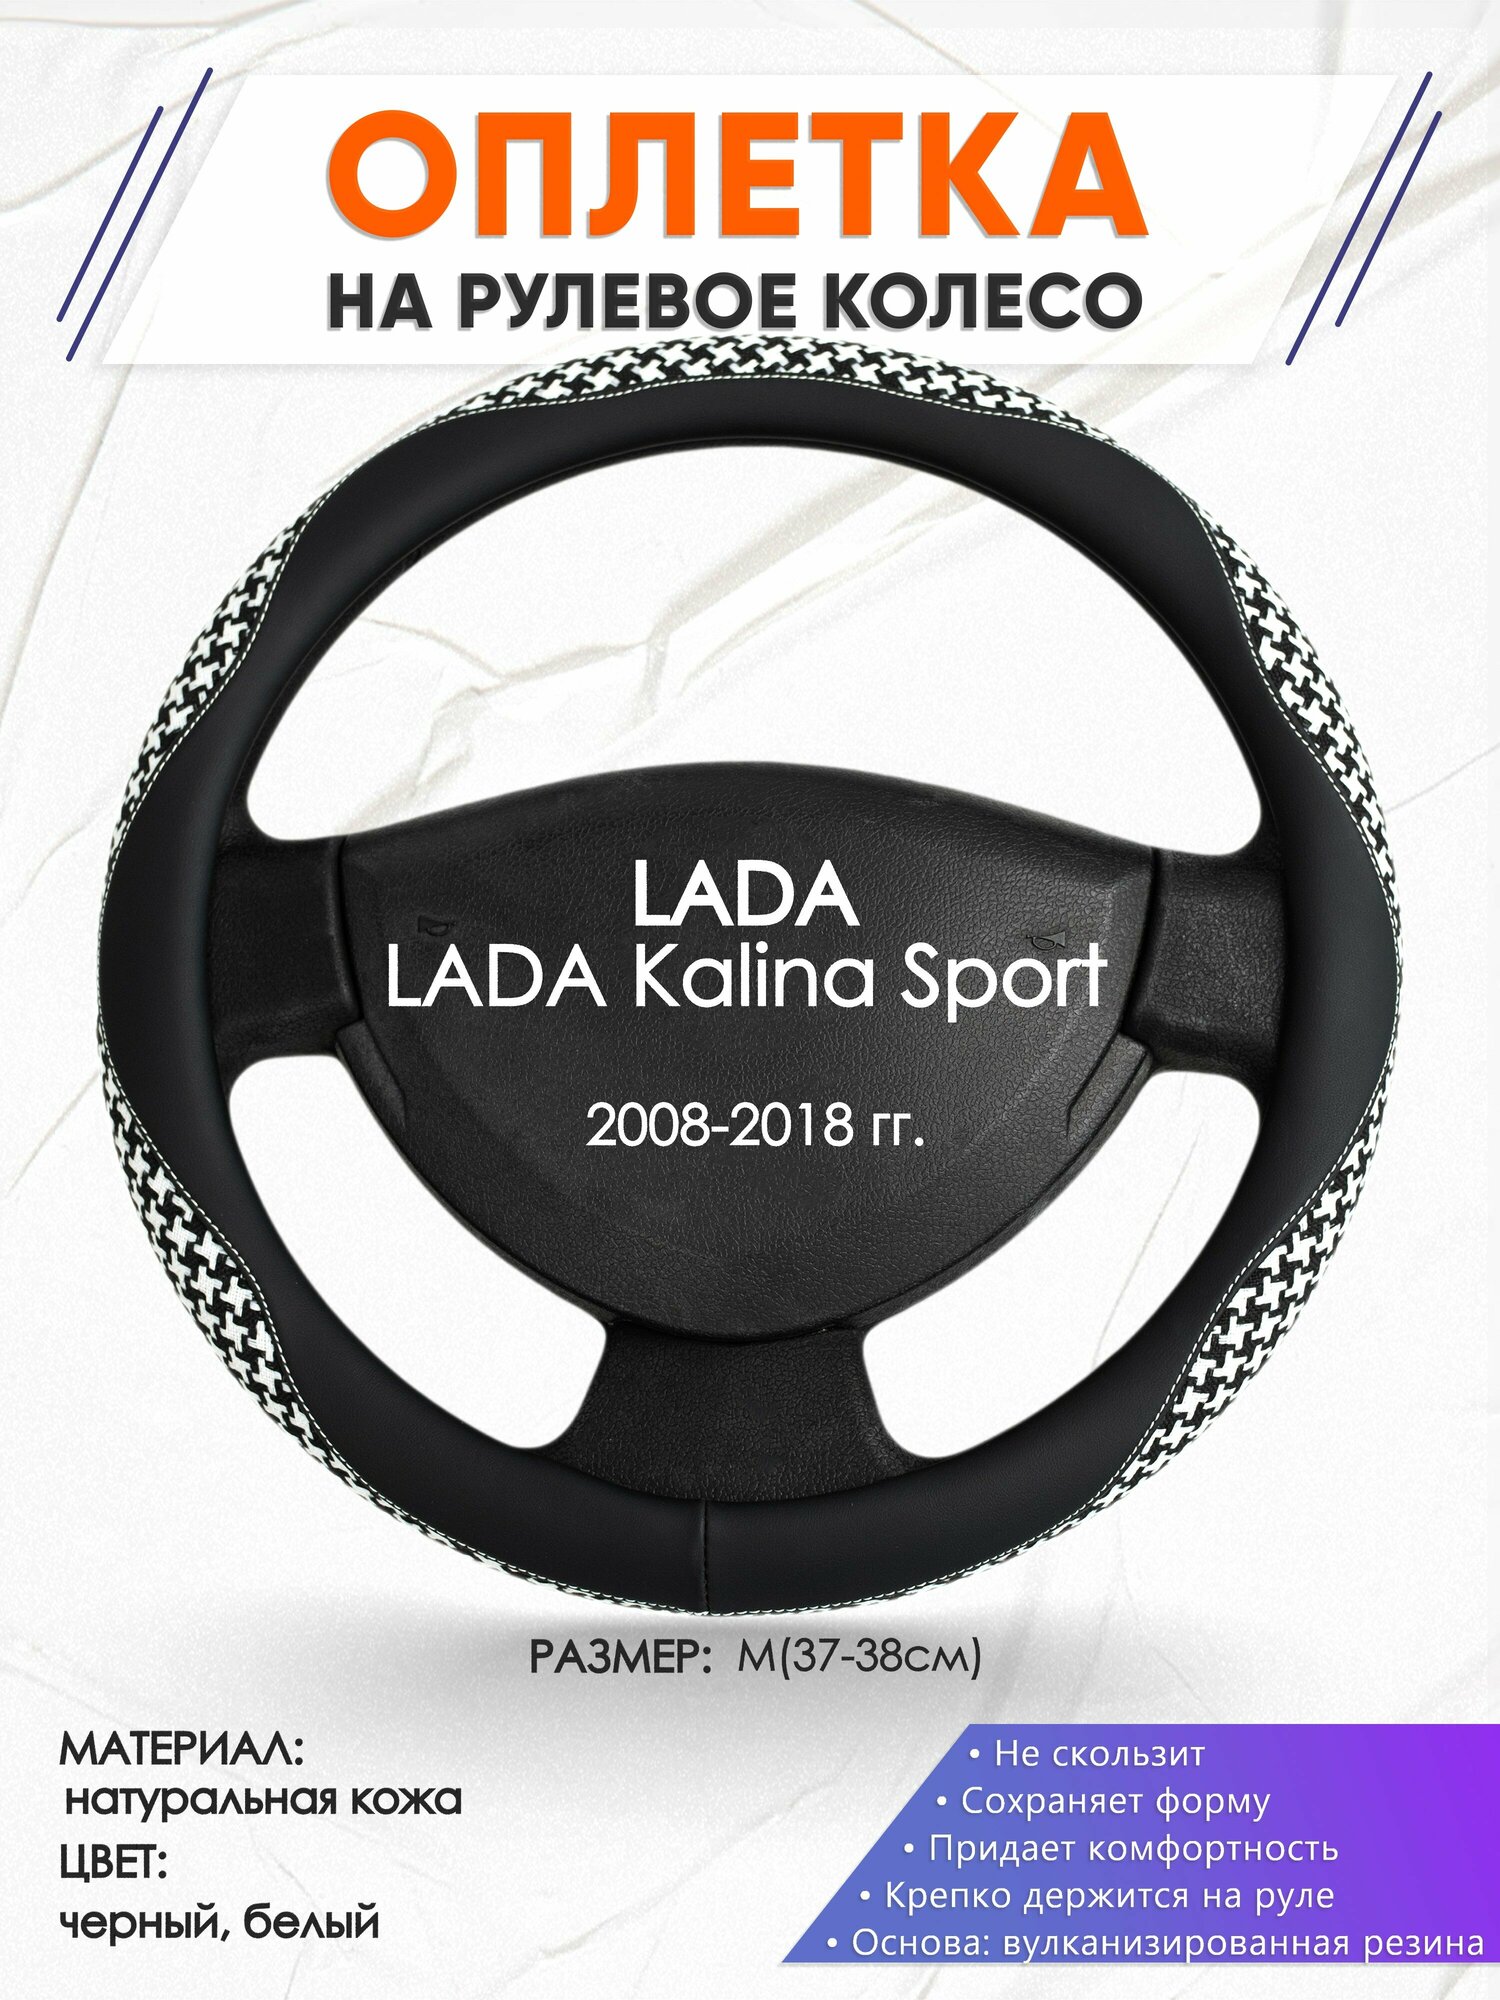 Оплетка наруль для LADA Kalina Sport(Лада Калина спорт) 2008-2018 годов выпуска, размер M(37-38см), Натуральная кожа 21